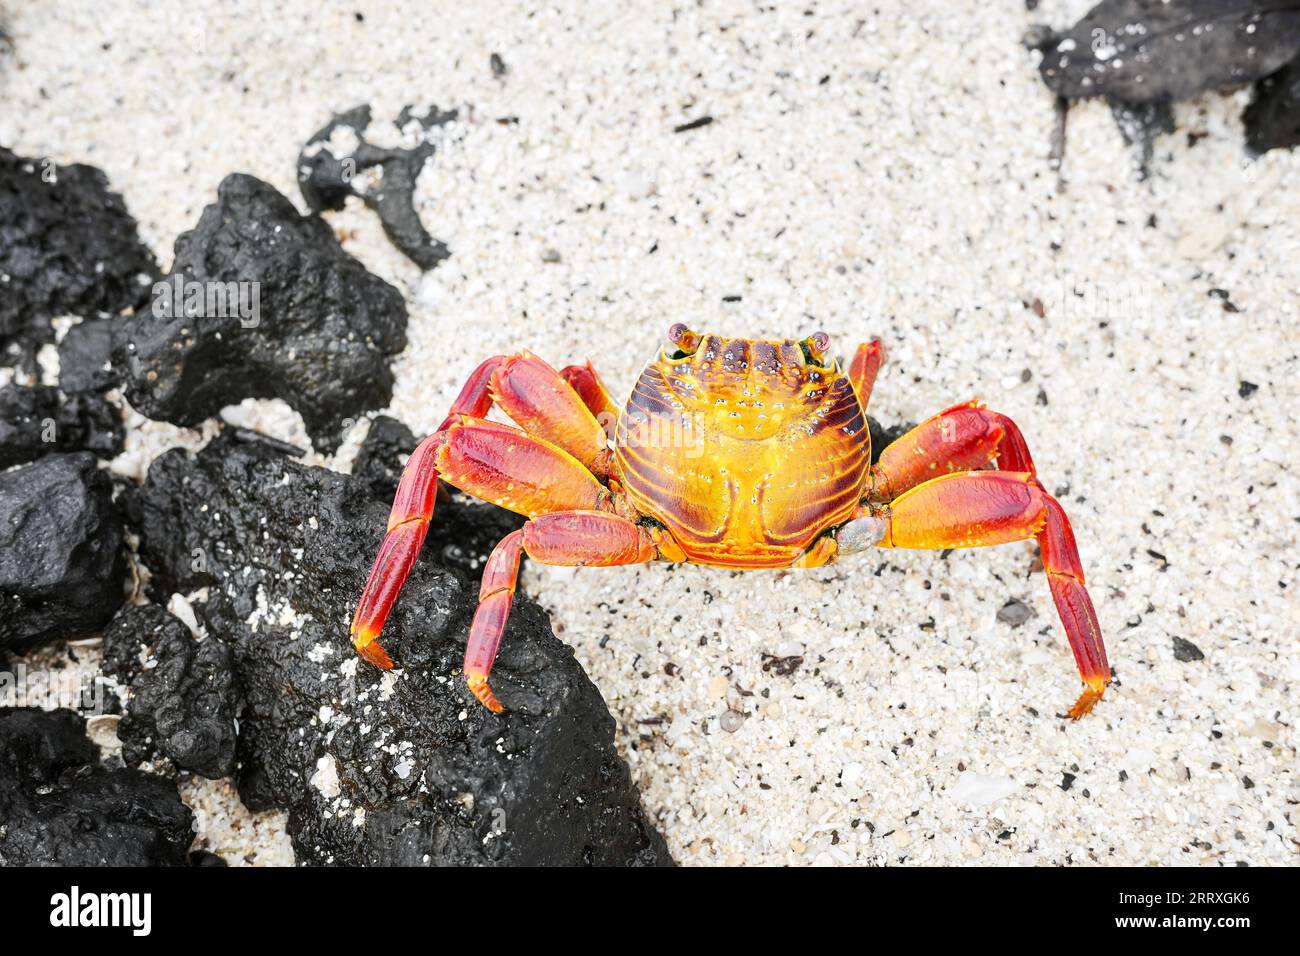 Photo en gros plan d'un crabe Sally Lightfoot sur une roche volcanique, mise au point sélective, îles Galapagos, Équateur. Banque D'Images